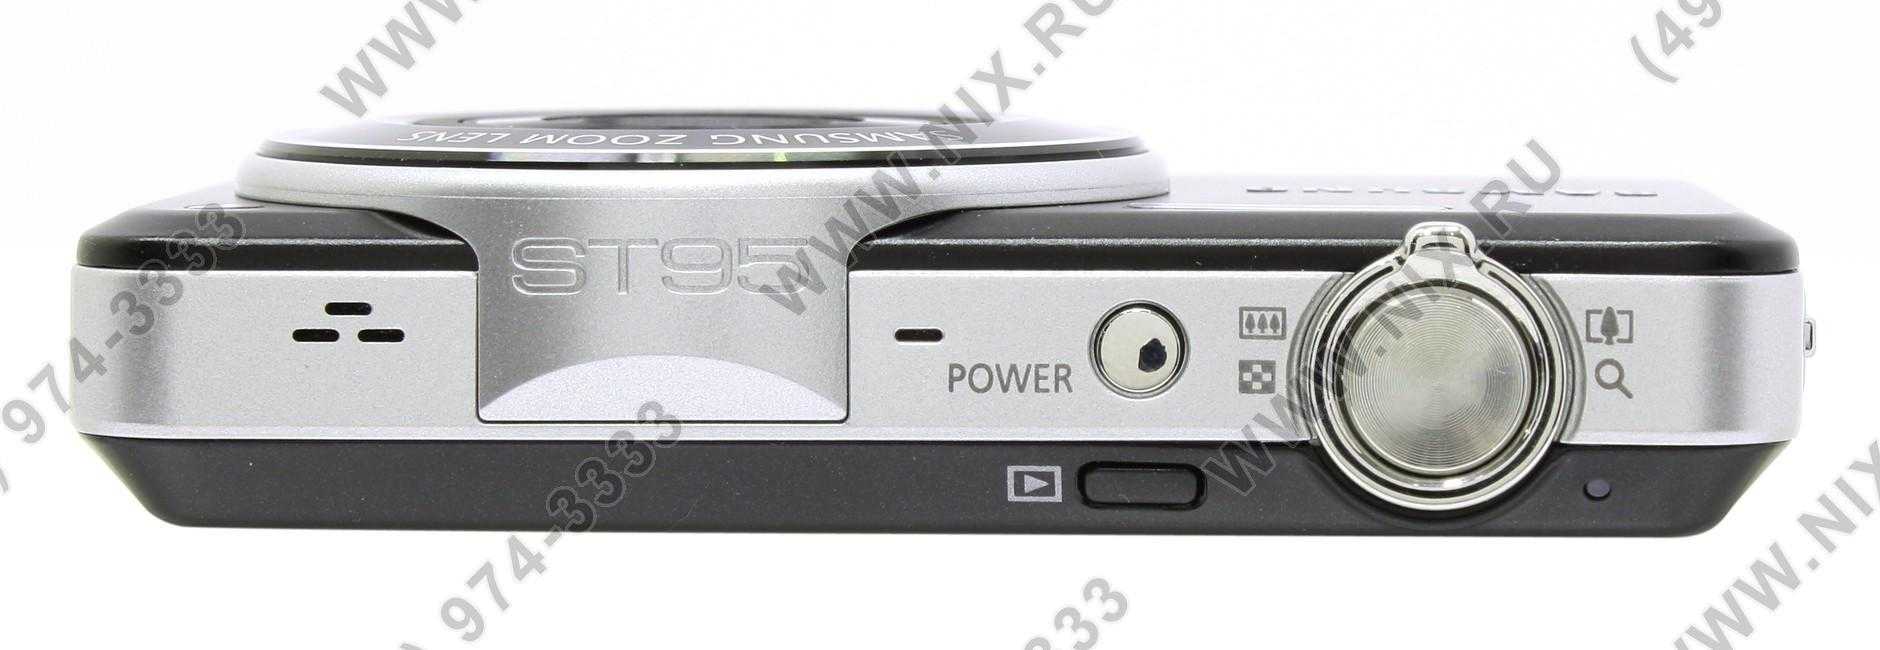 Samsung st95 - купить , скидки, цена, отзывы, обзор, характеристики - фотоаппараты цифровые